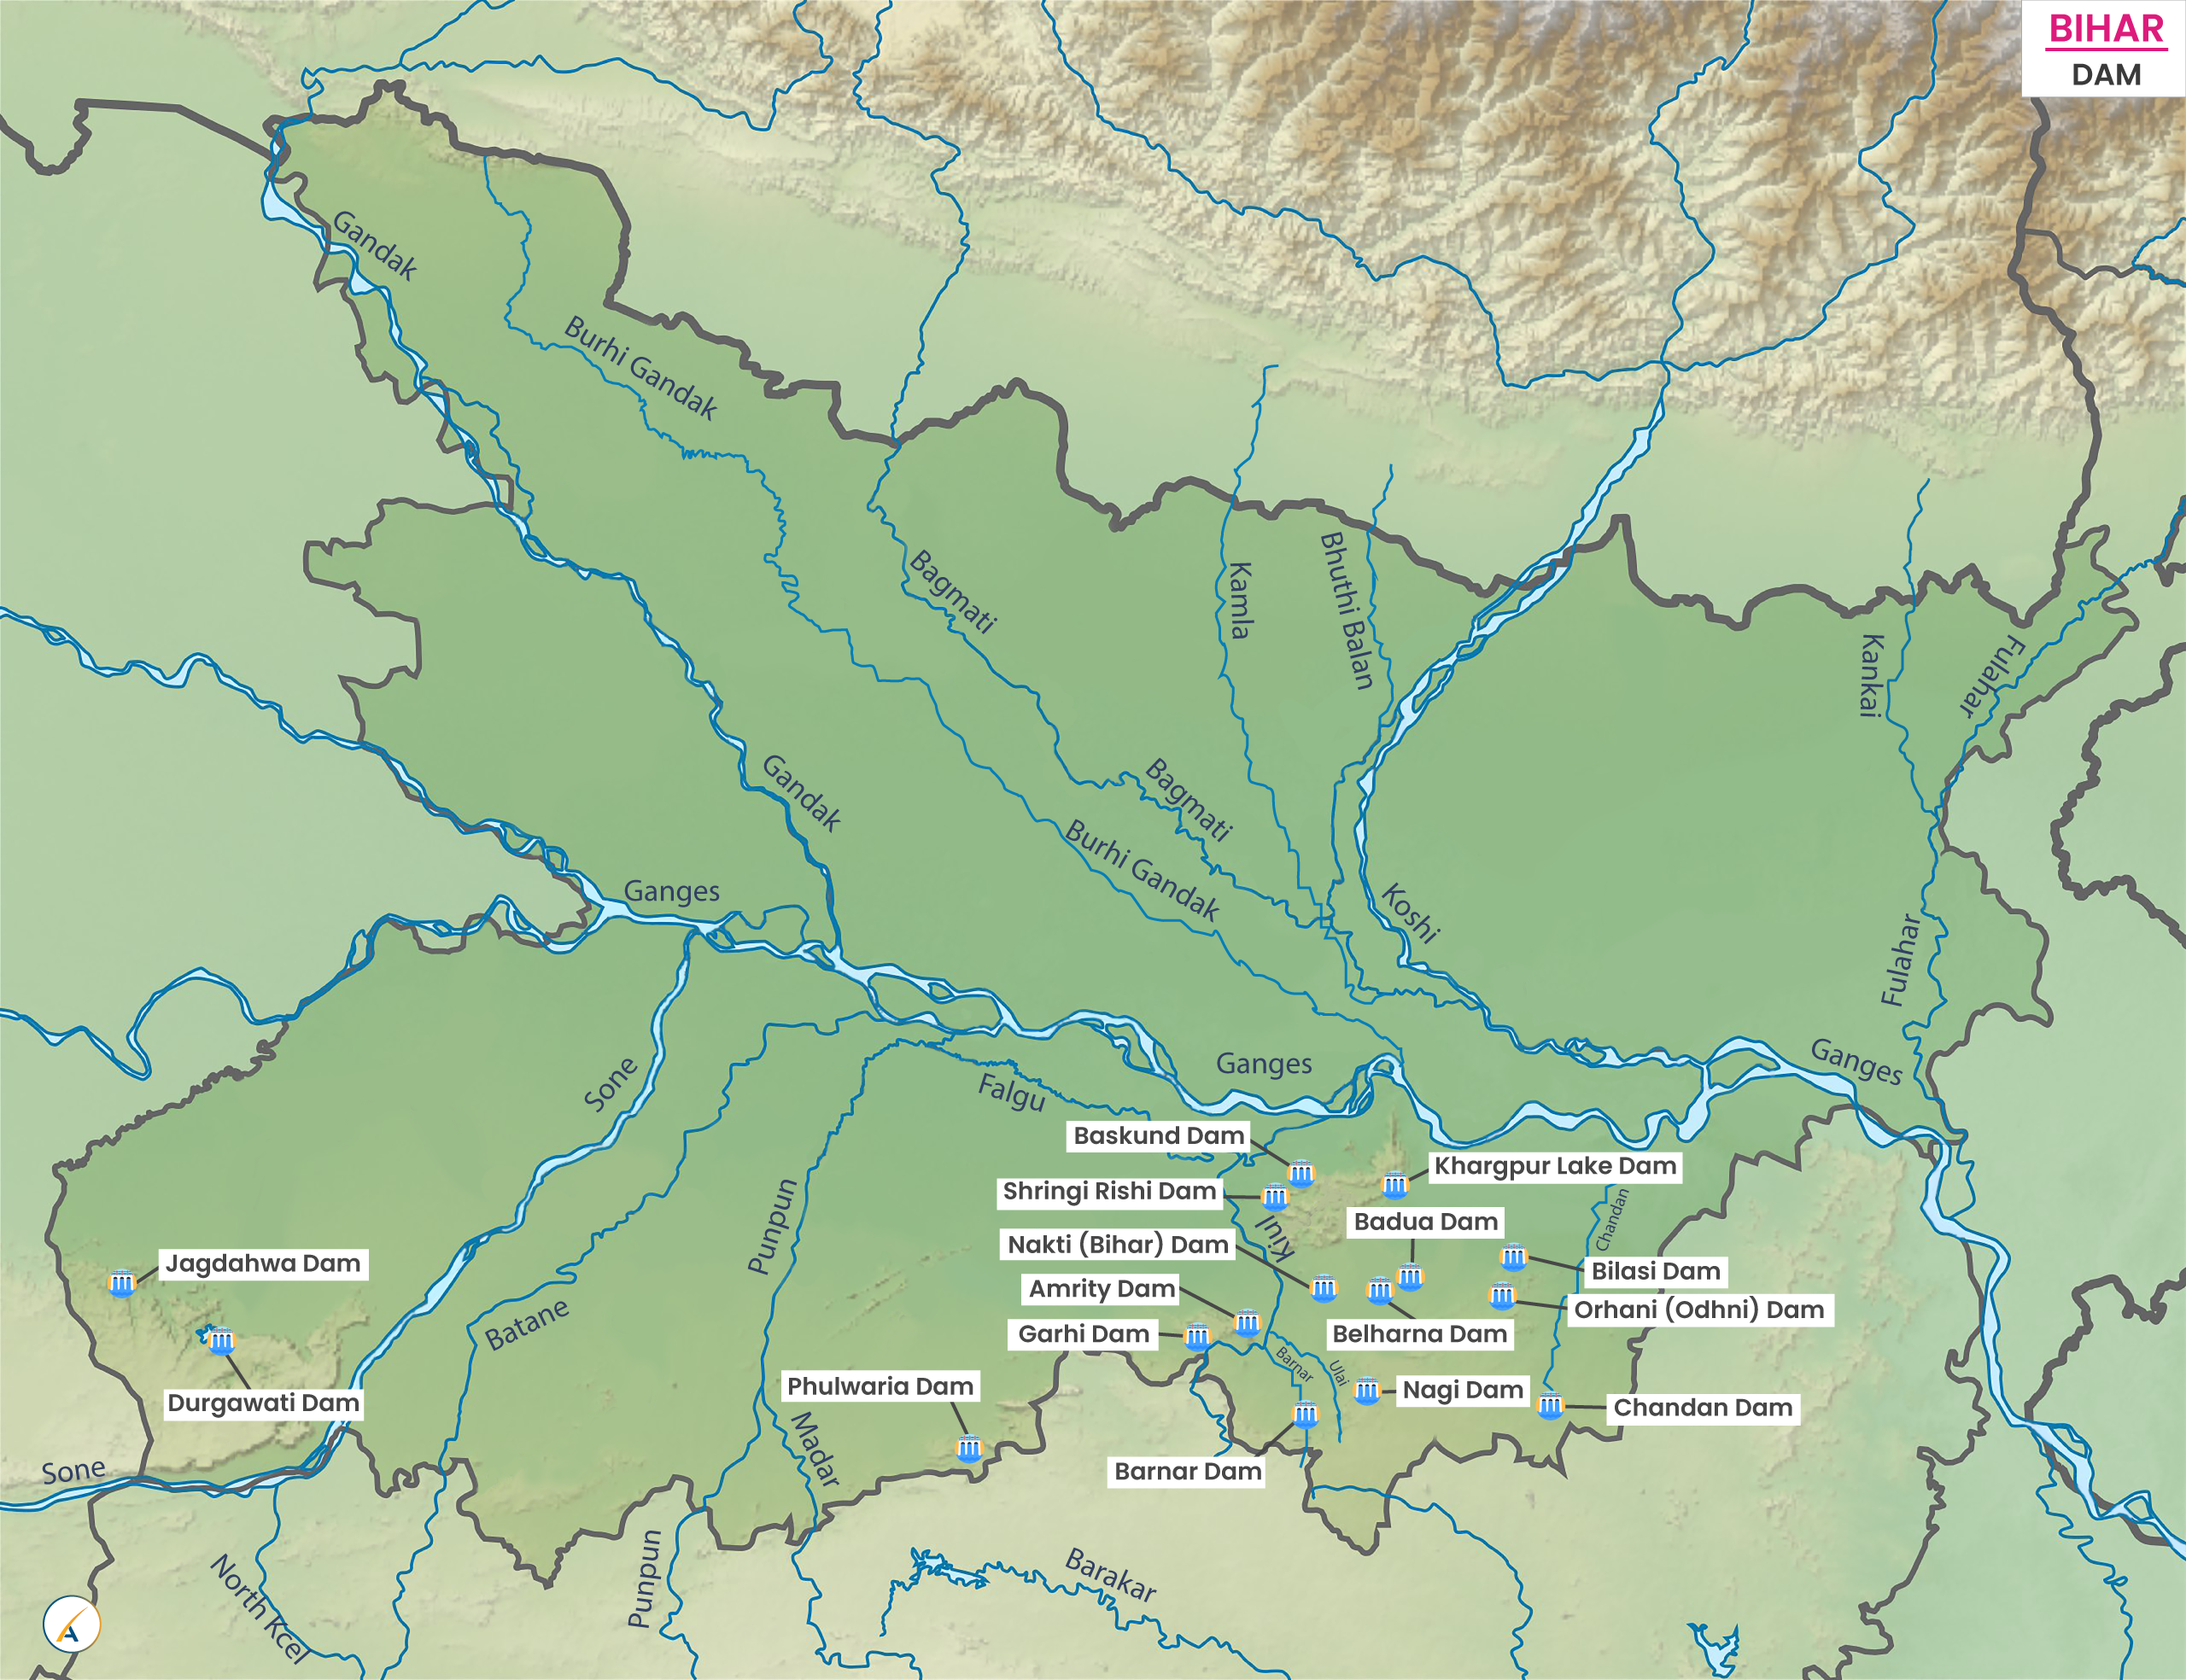 Major Dams in Bihar